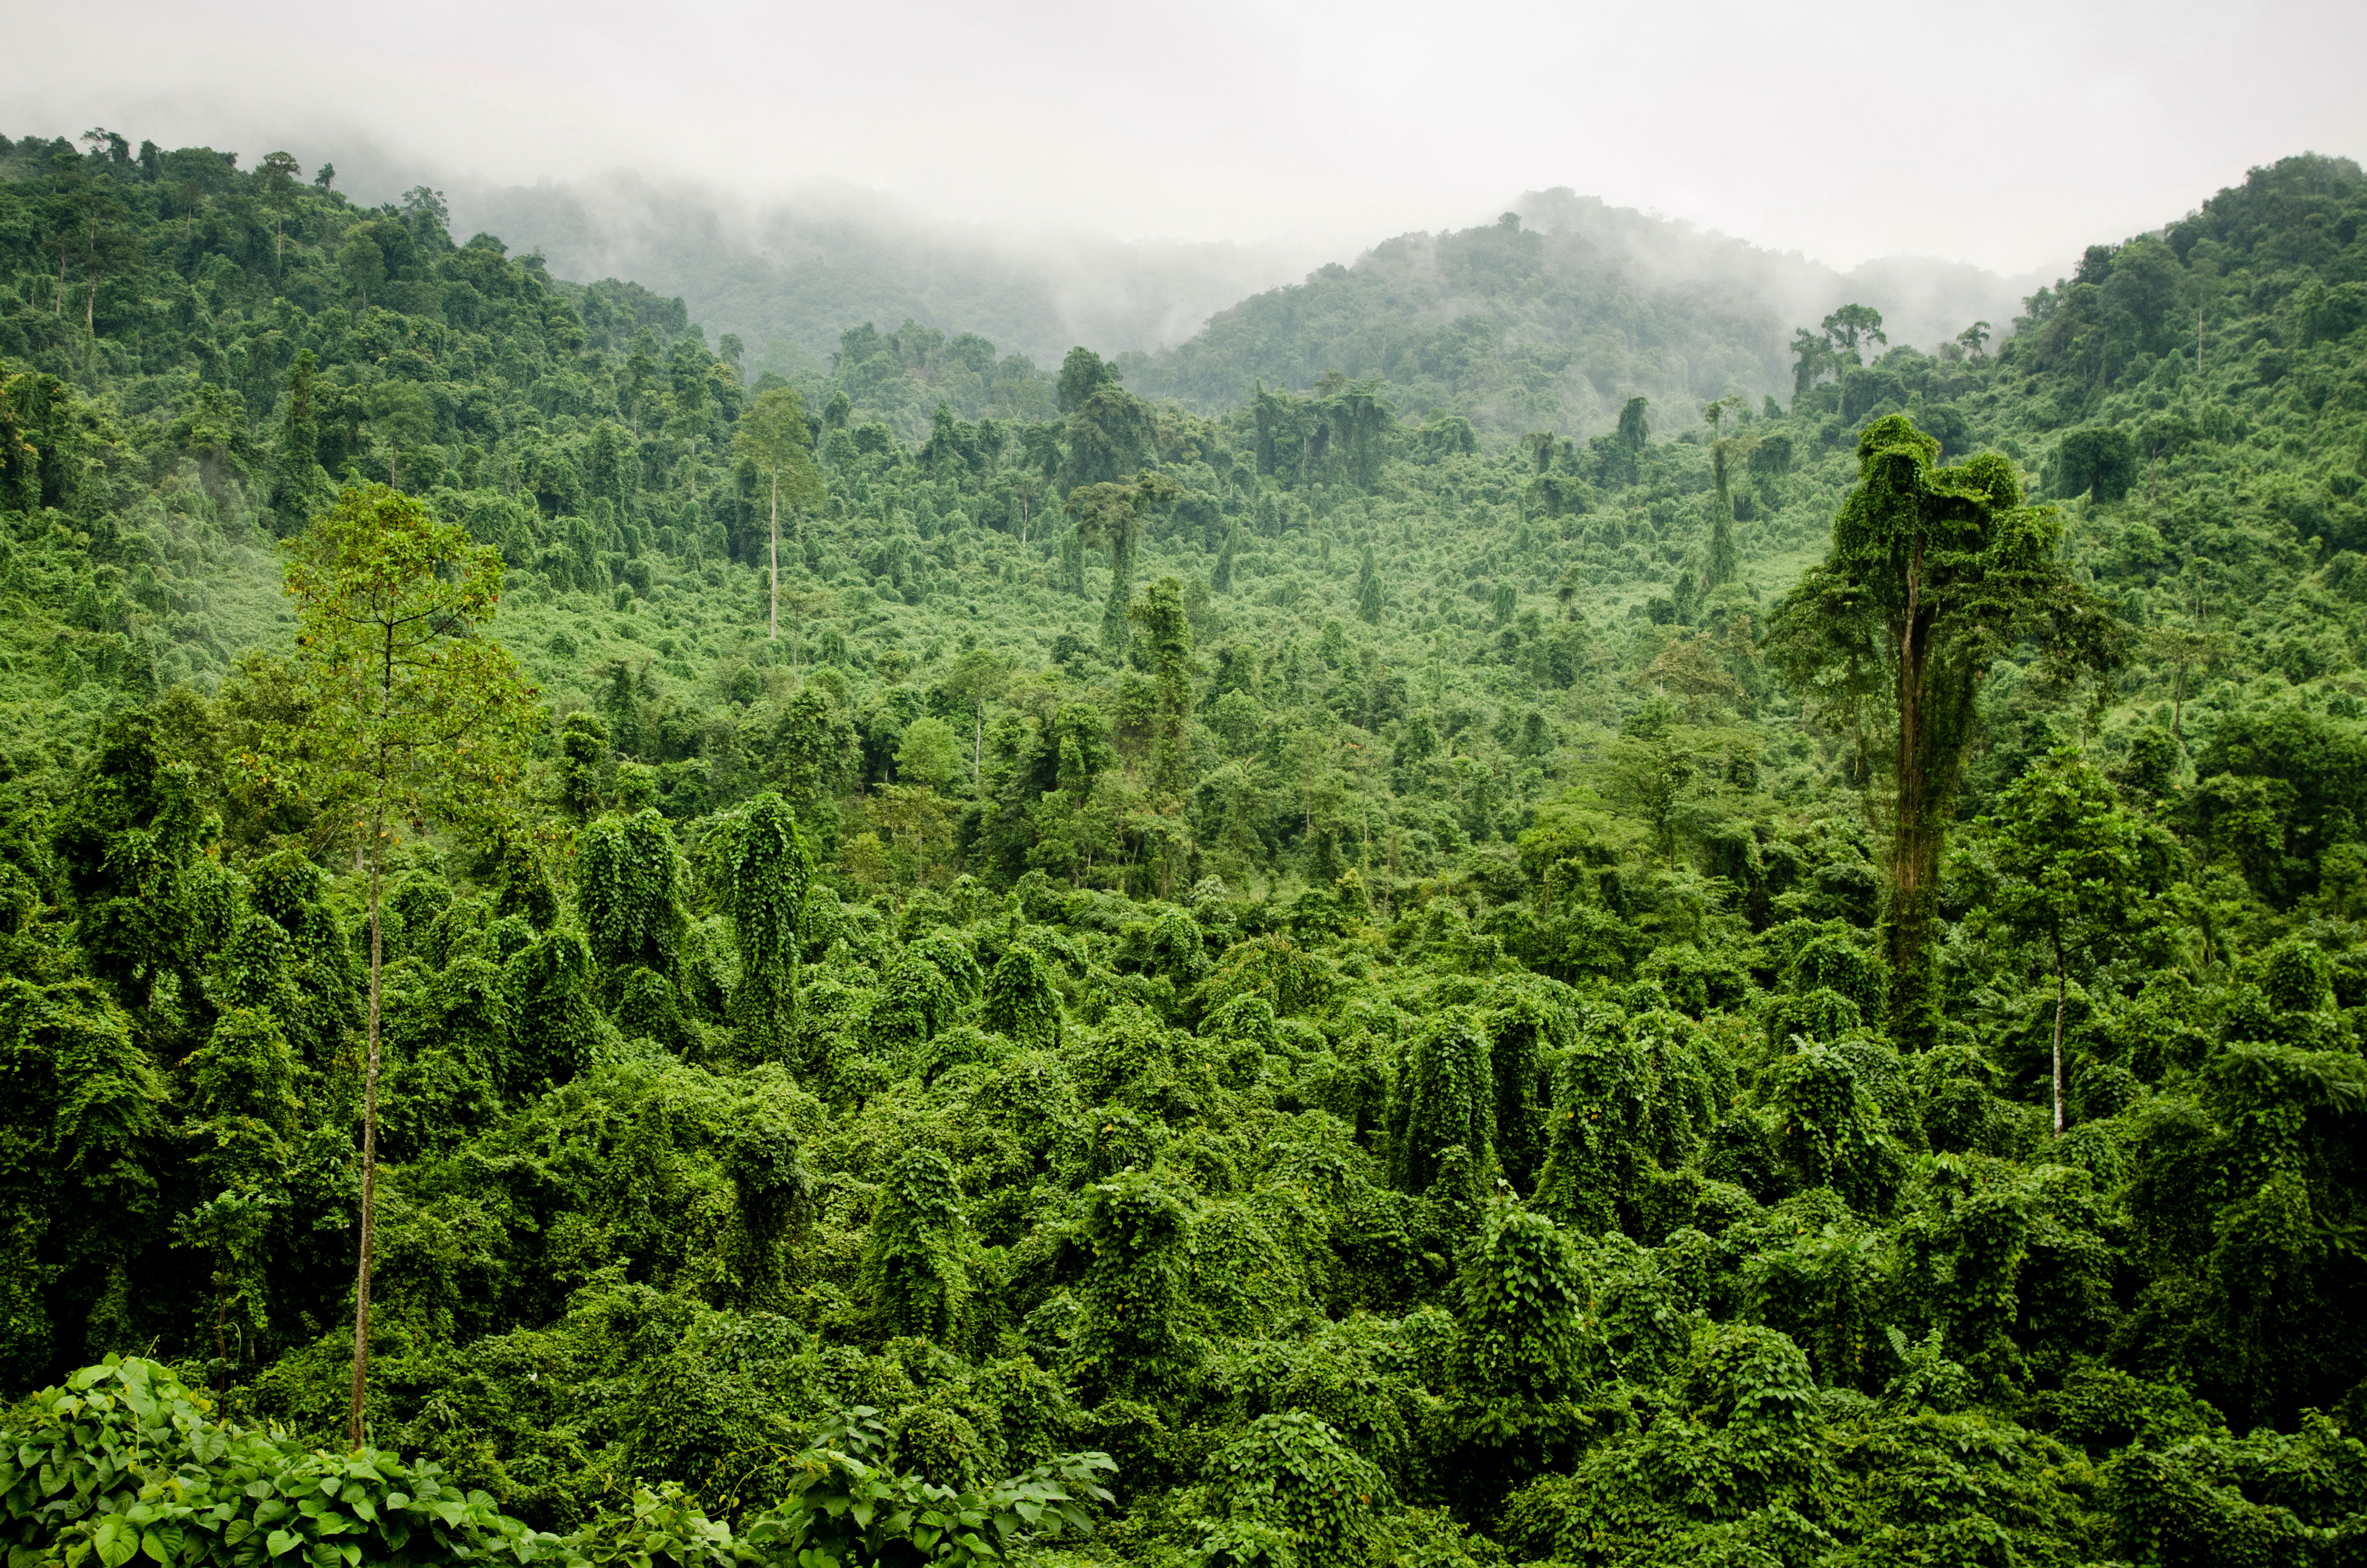 Afbeeldingen Jungle Natuur Tropen Bossen 4000x2650 bos tropisch